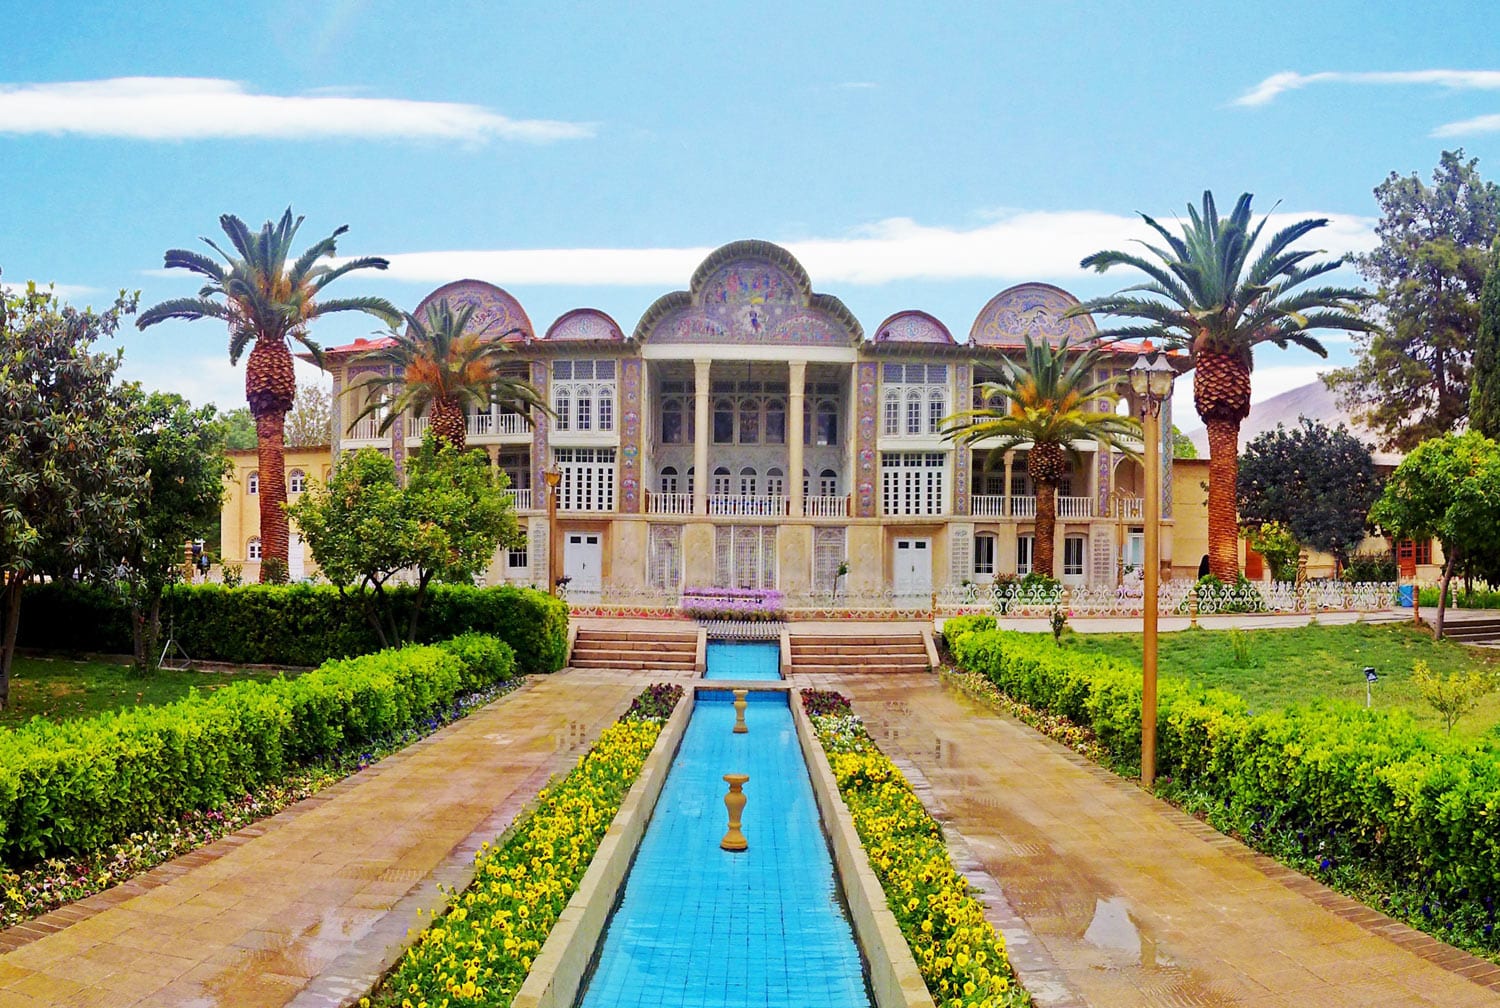 Eram Garden Is A Historic Persian Garden In Shiraz